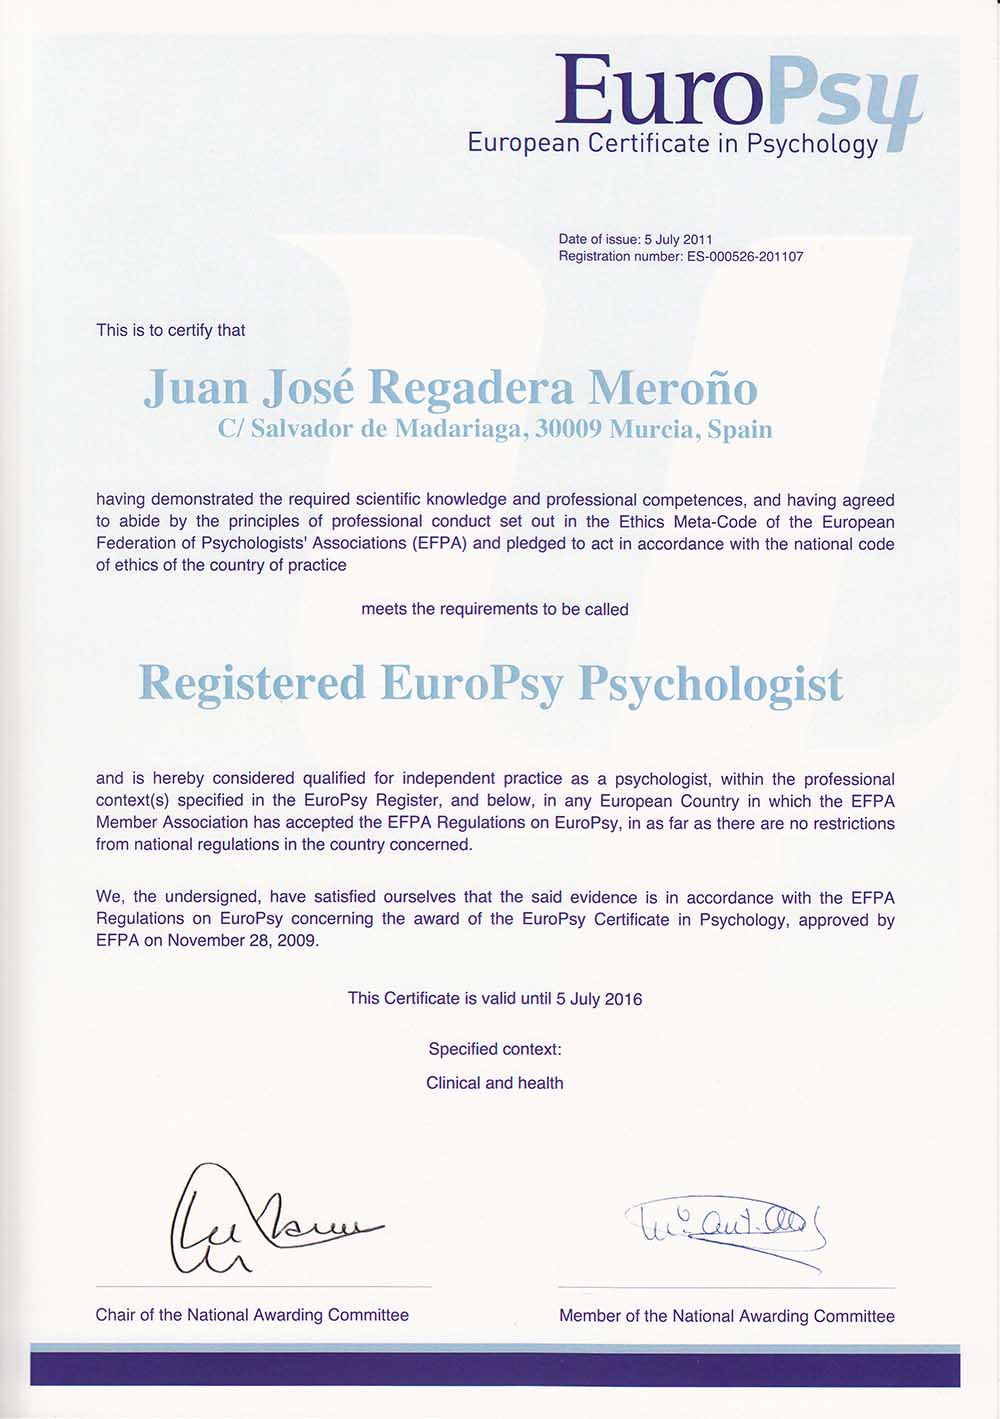 titulo europsy psychologist Dr. Juan José Regadera Meroño